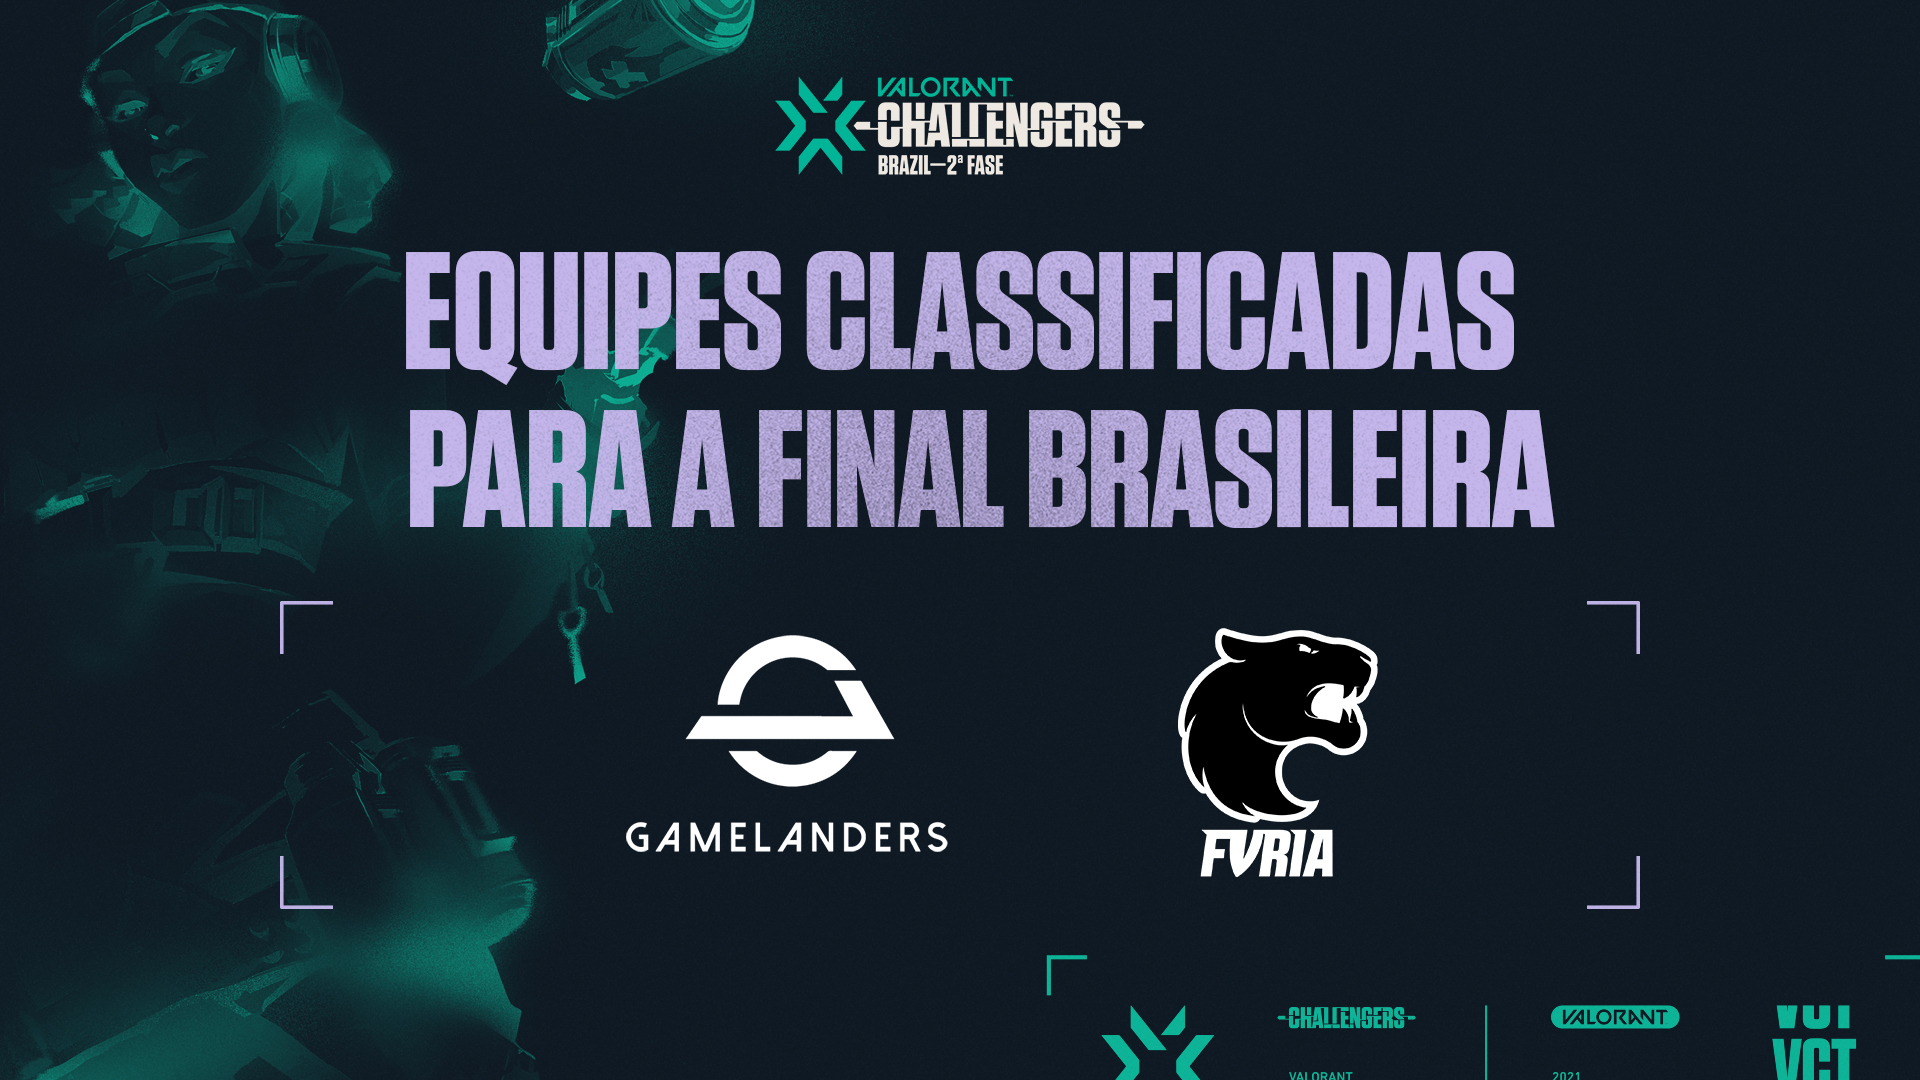 Valorant Challengers Brazil Gamelander e Furia avançam para a Final